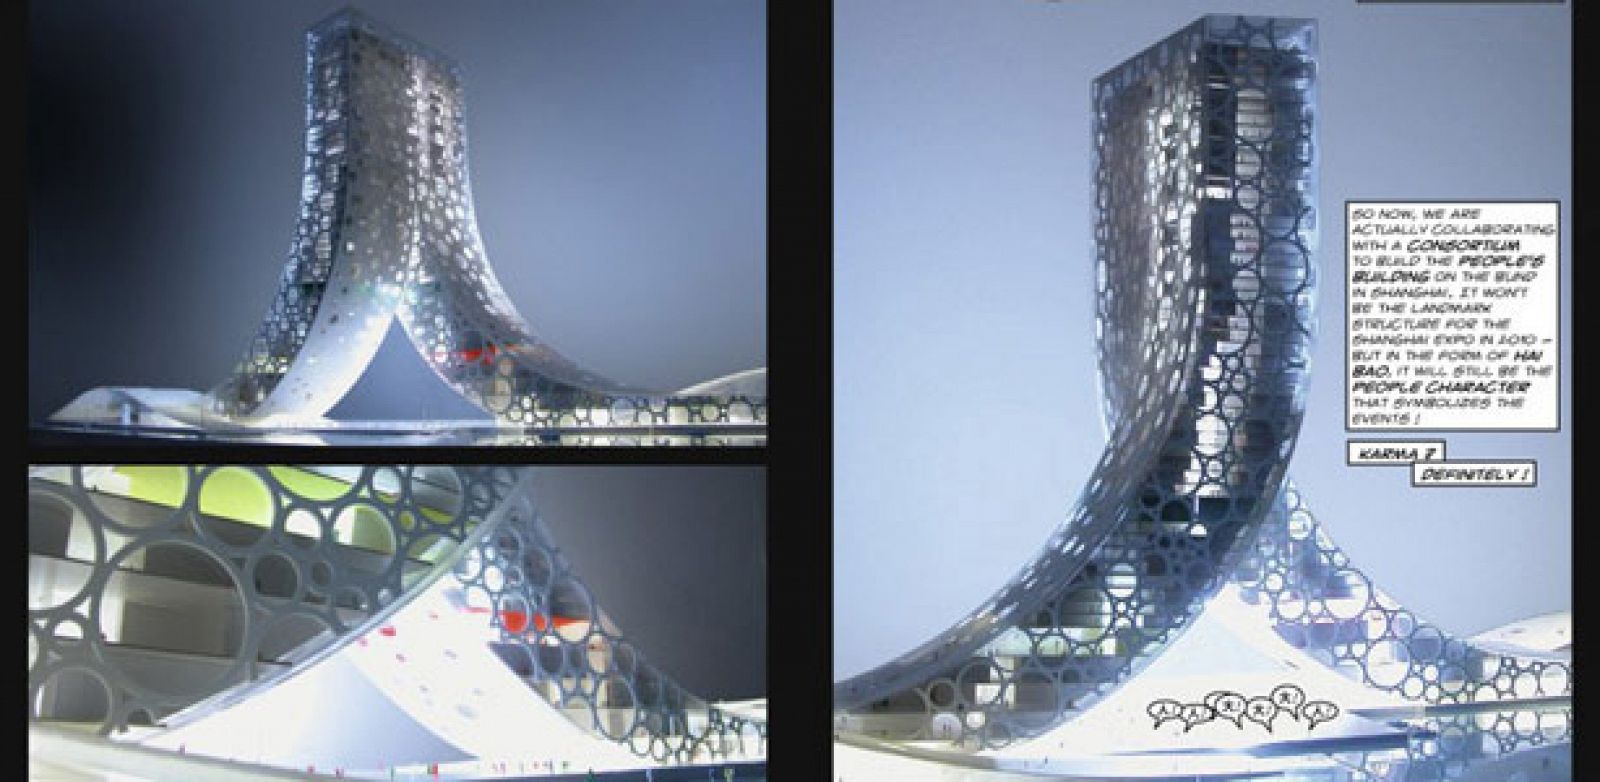 Viñetas del libro 'Yes is more', con el diseño para el 'Edificio del pueblo' de Shangái